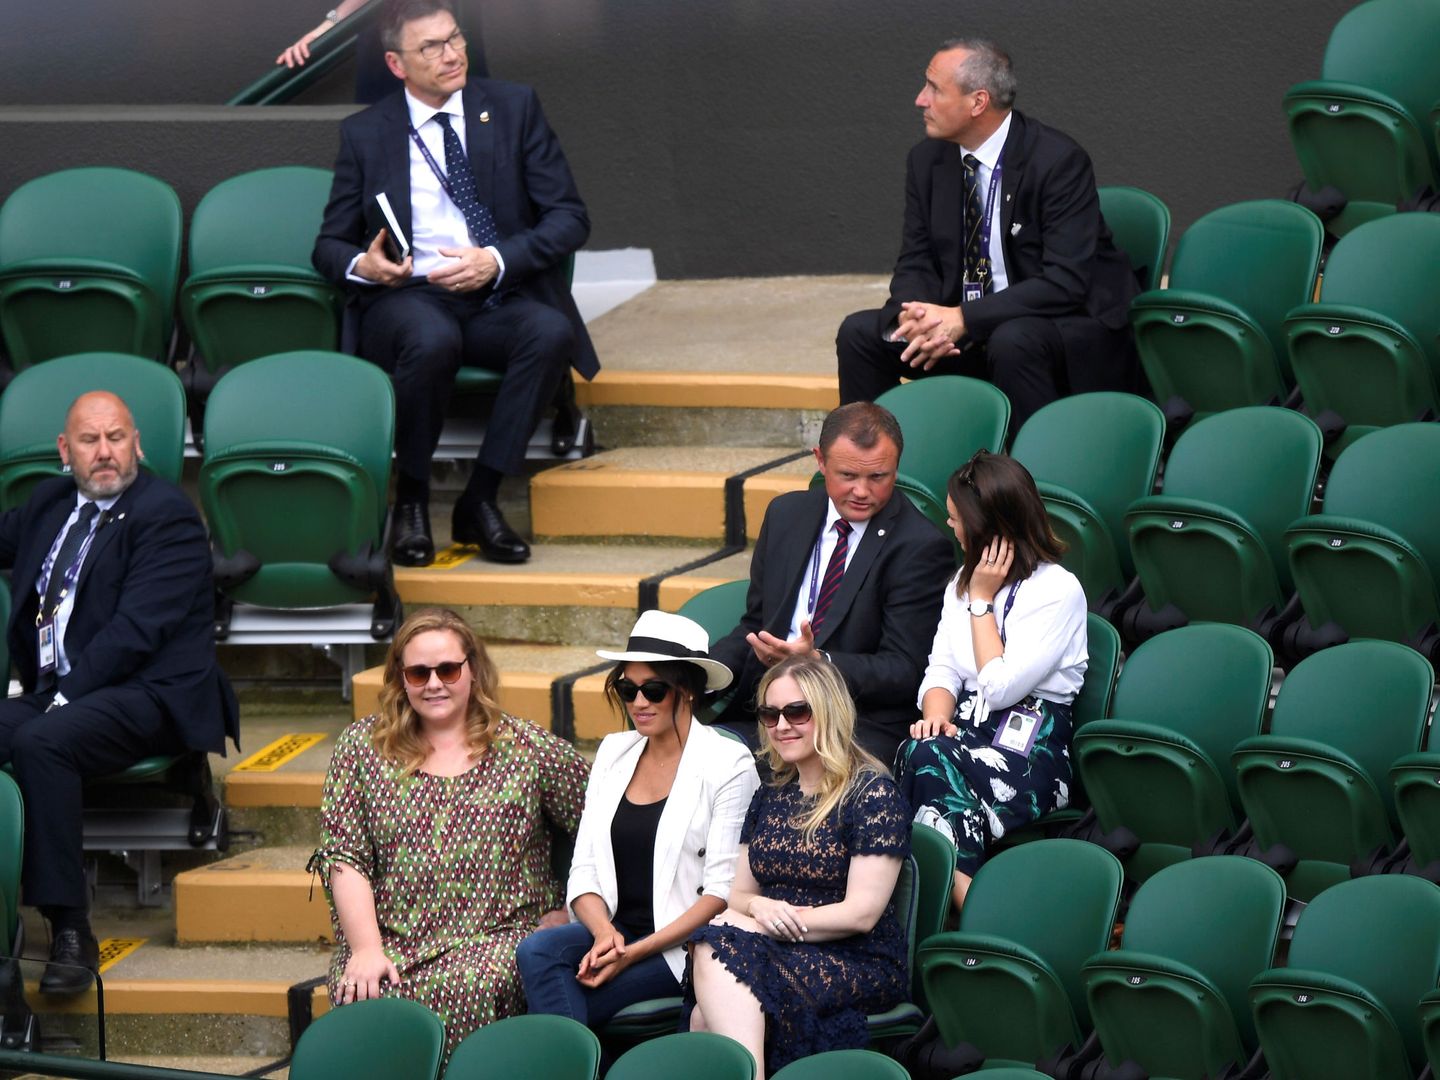 La duquesa y sus amigas. (Reuters)